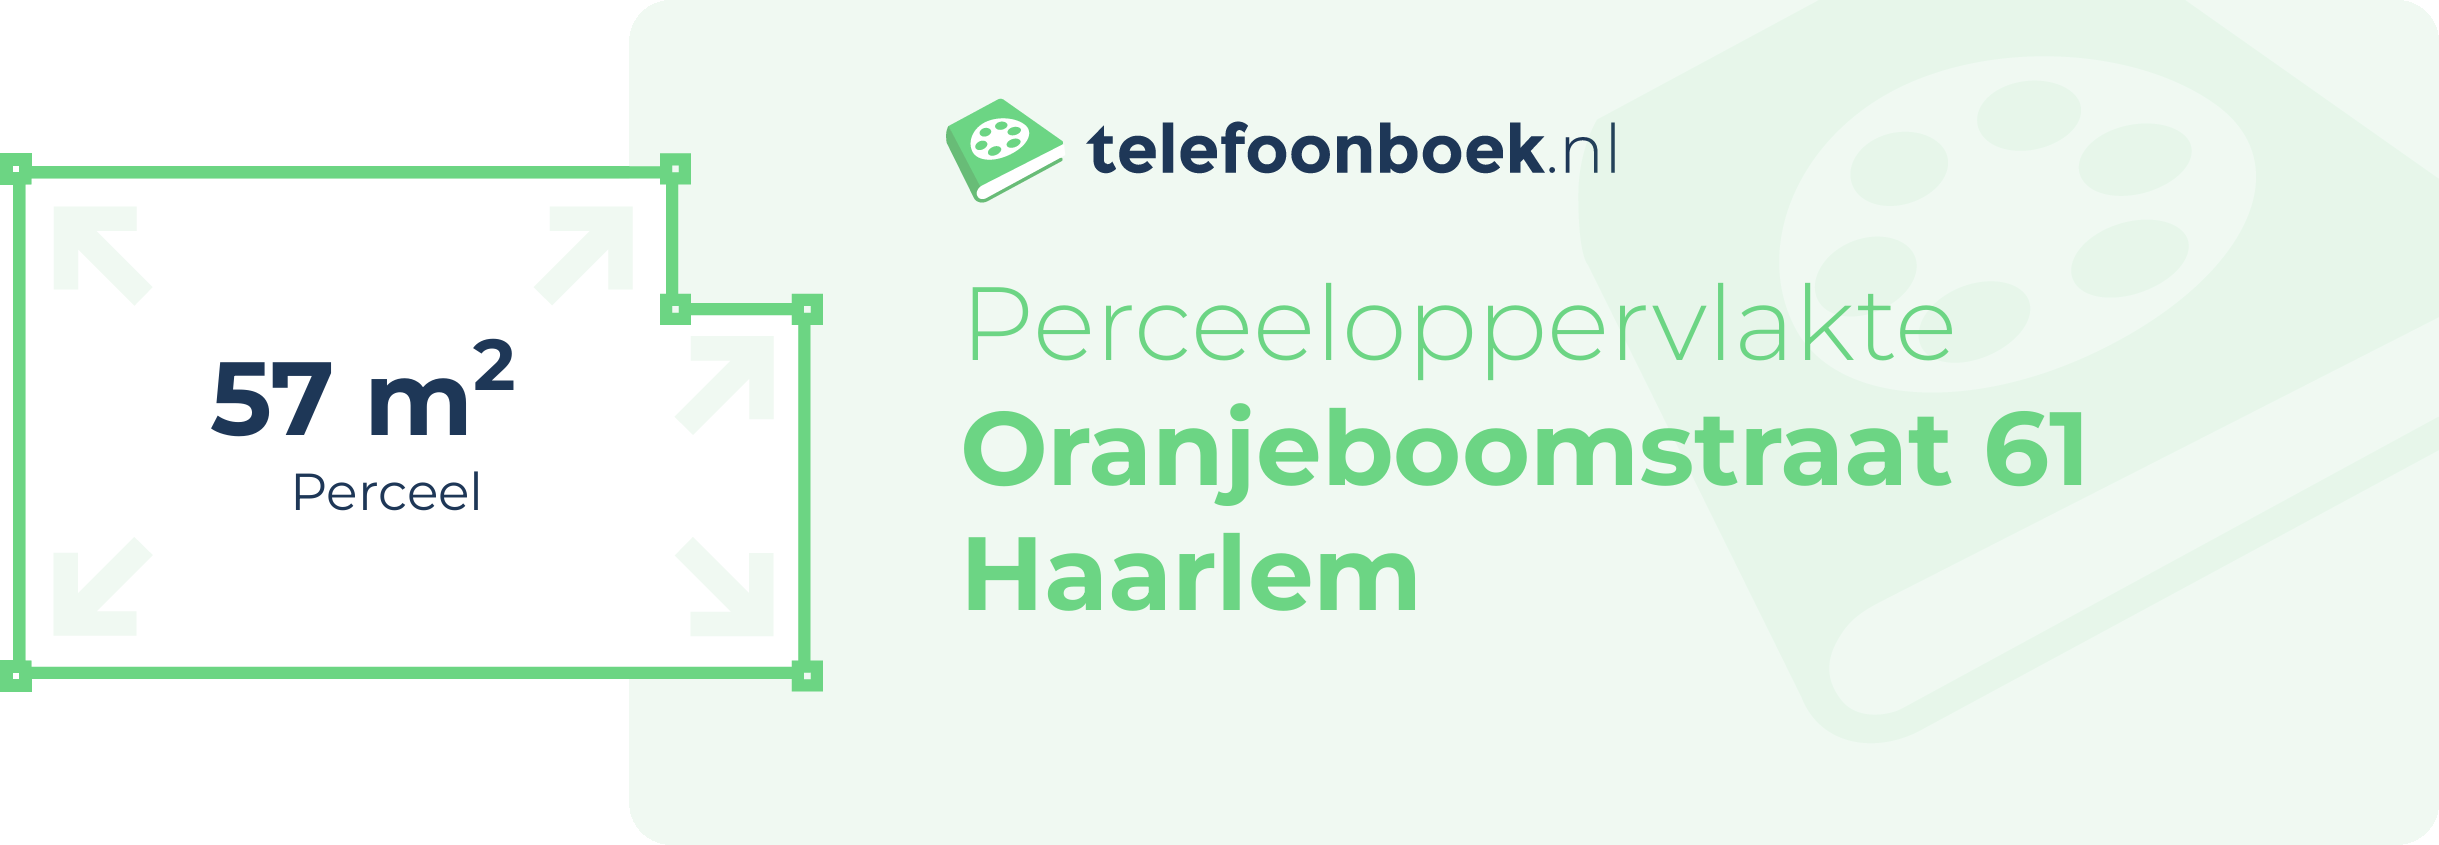 Perceeloppervlakte Oranjeboomstraat 61 Haarlem